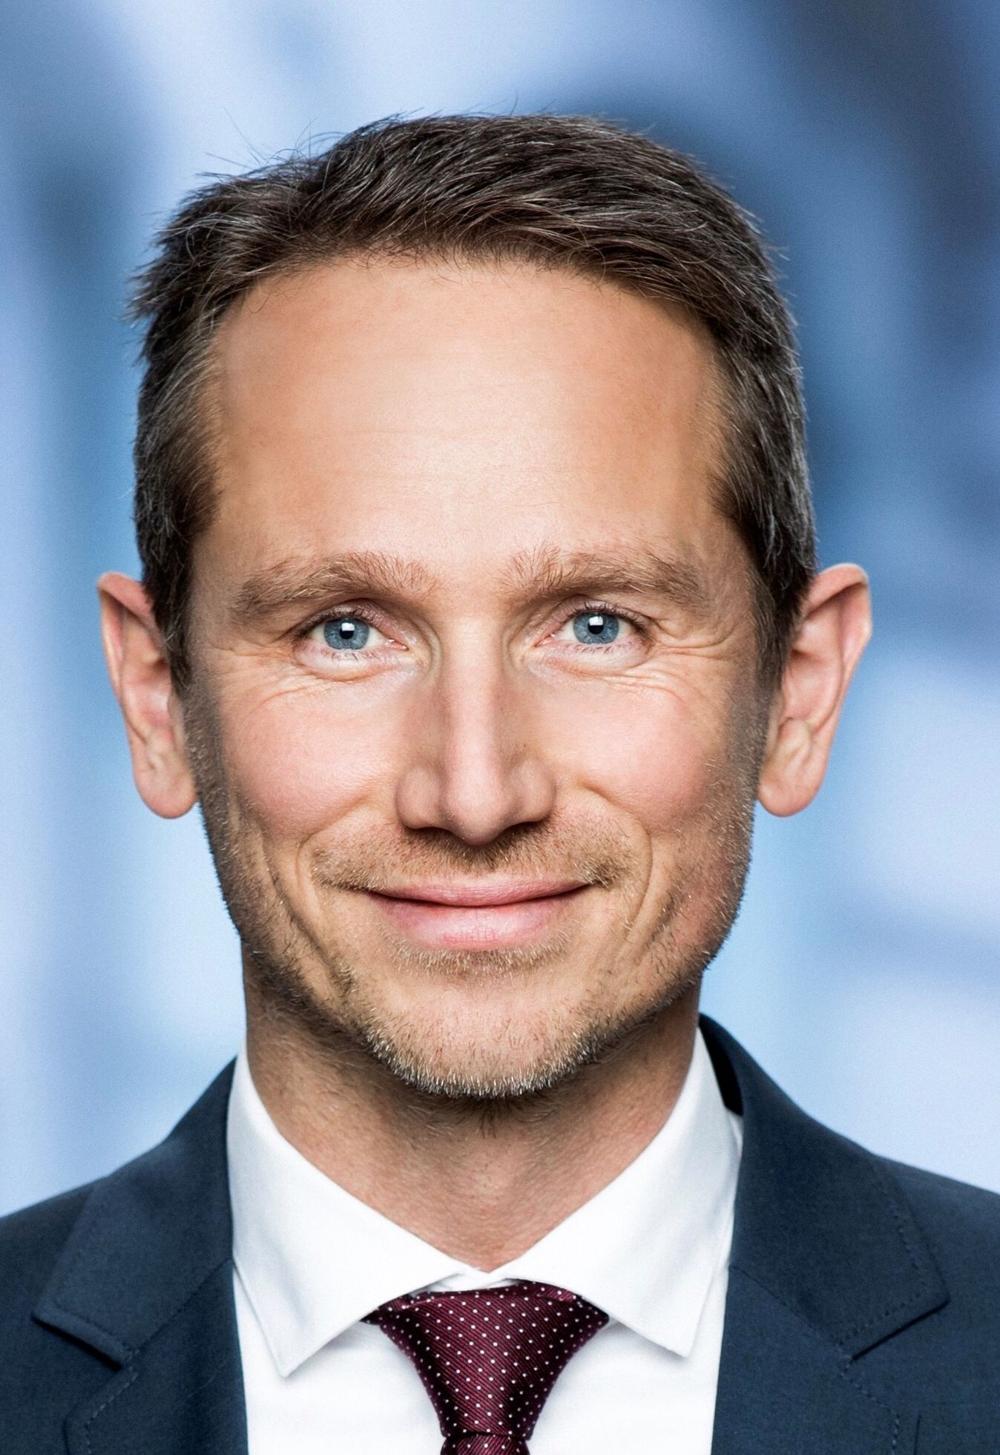 Kristian Jensen er administrerende direktør i erhvervsorganisationen Green Power Denmark.